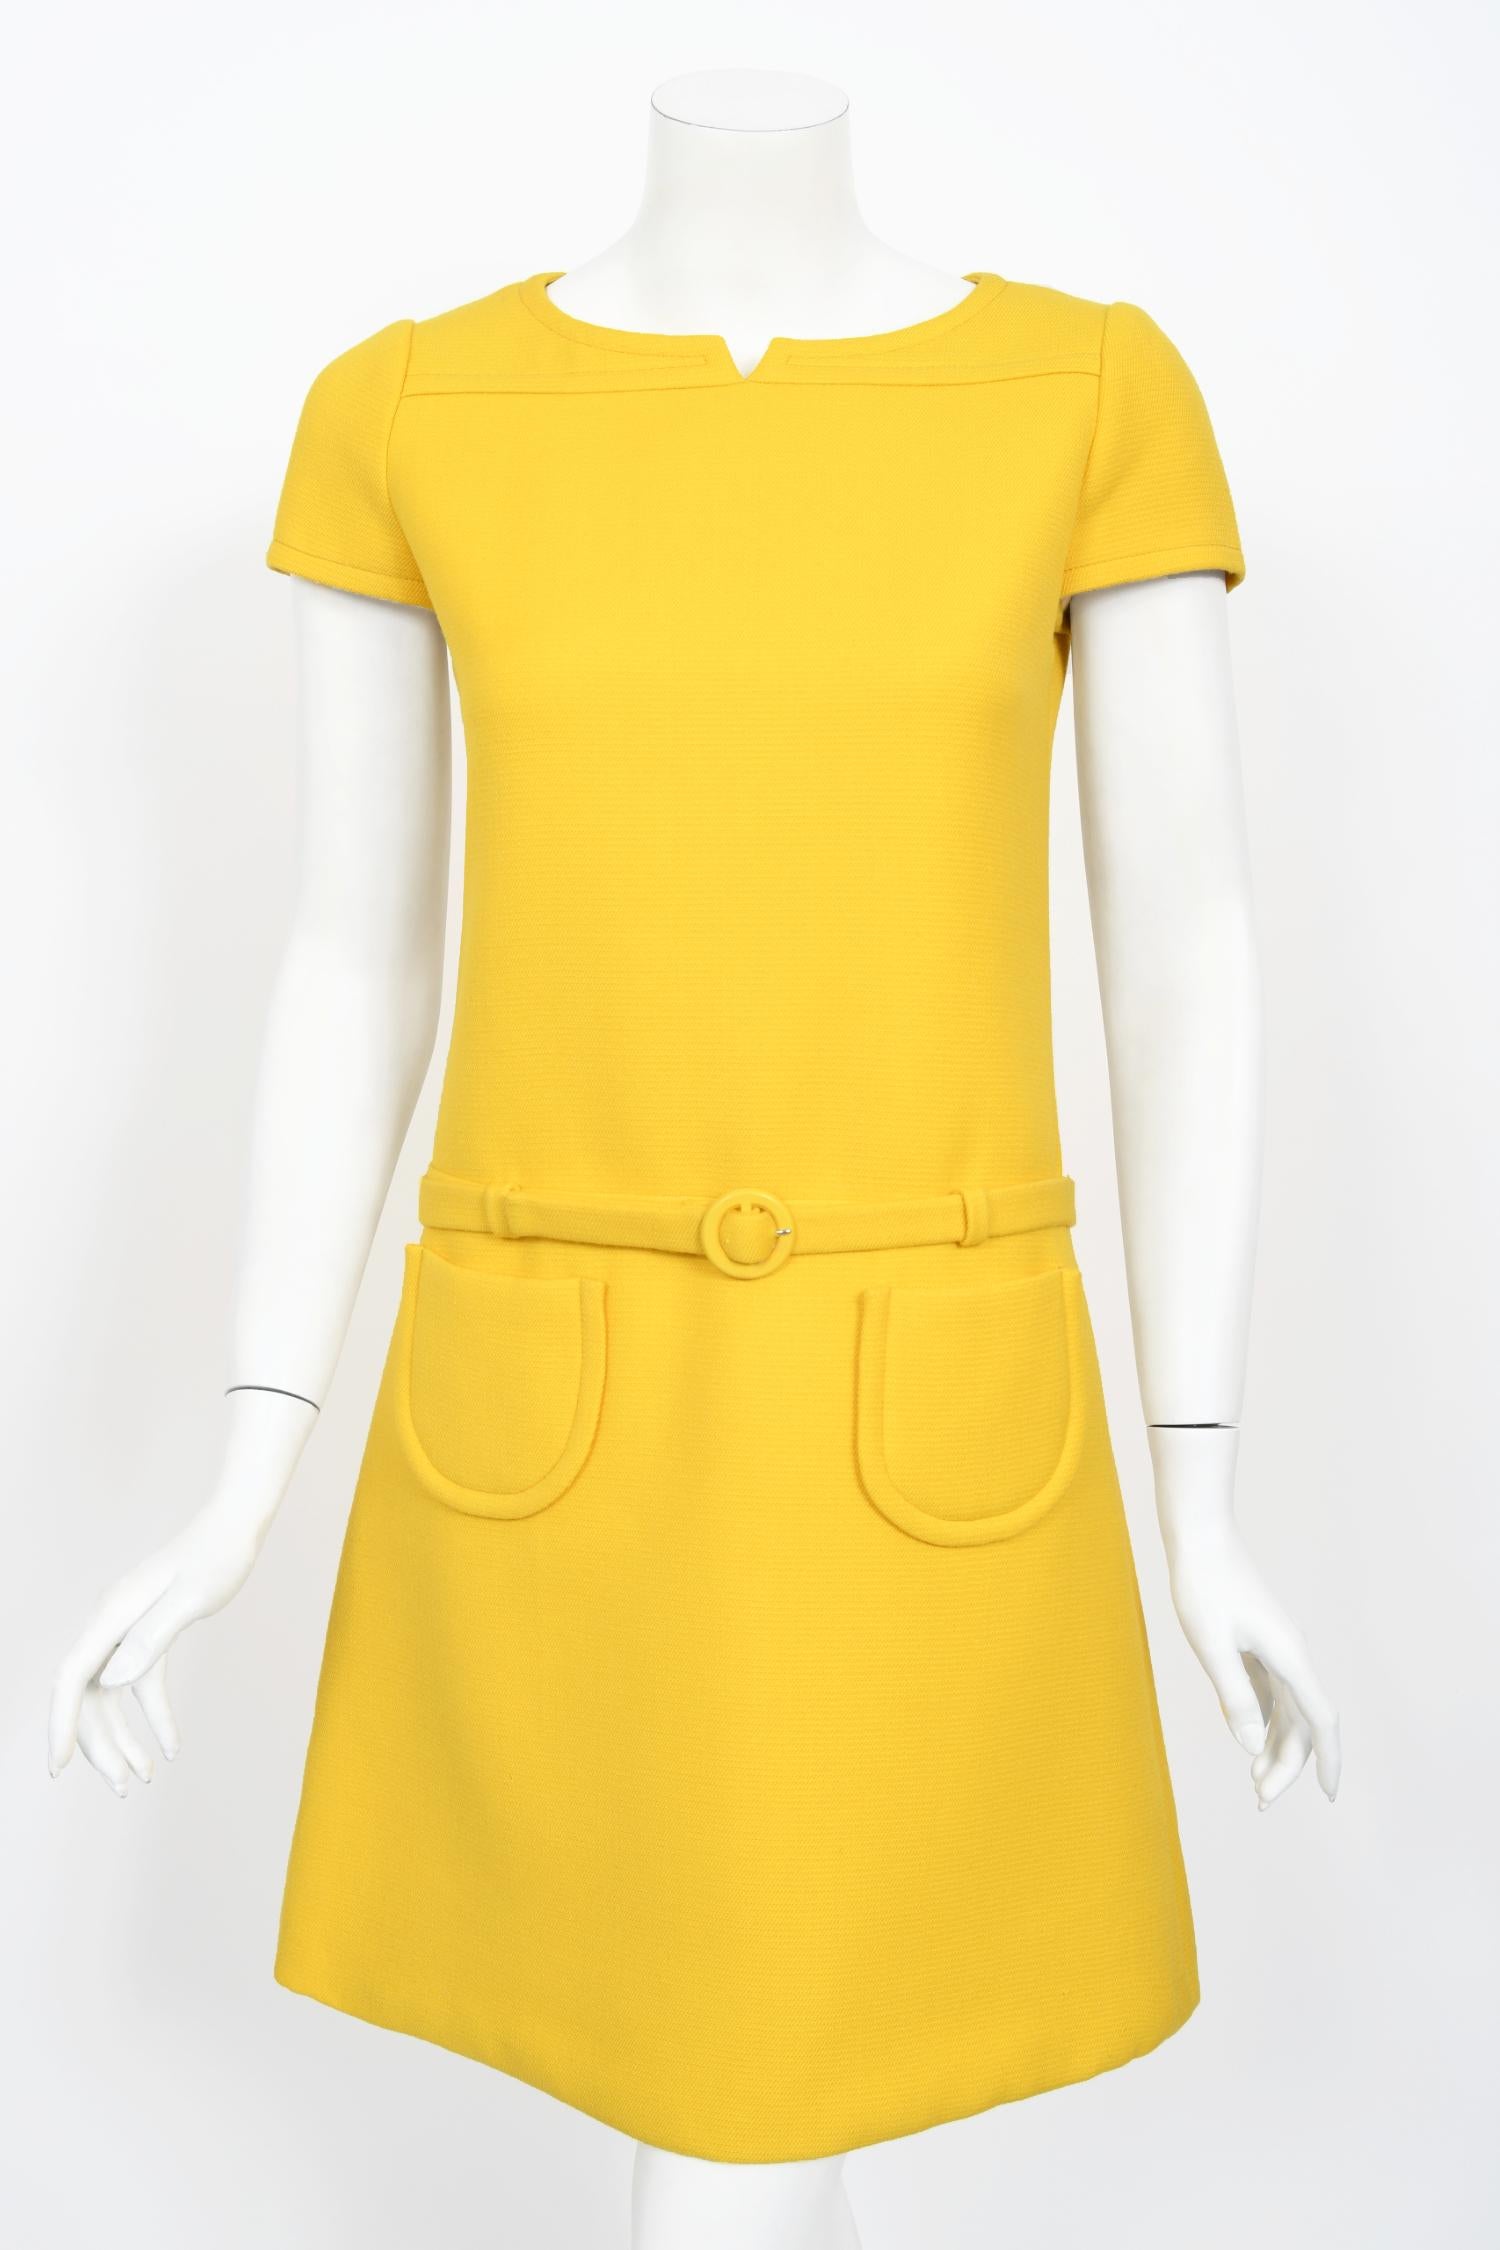 Women's Vintage 1968 André Courrèges Paris Couture Yellow Wool Belt Space-Age Mod Dress